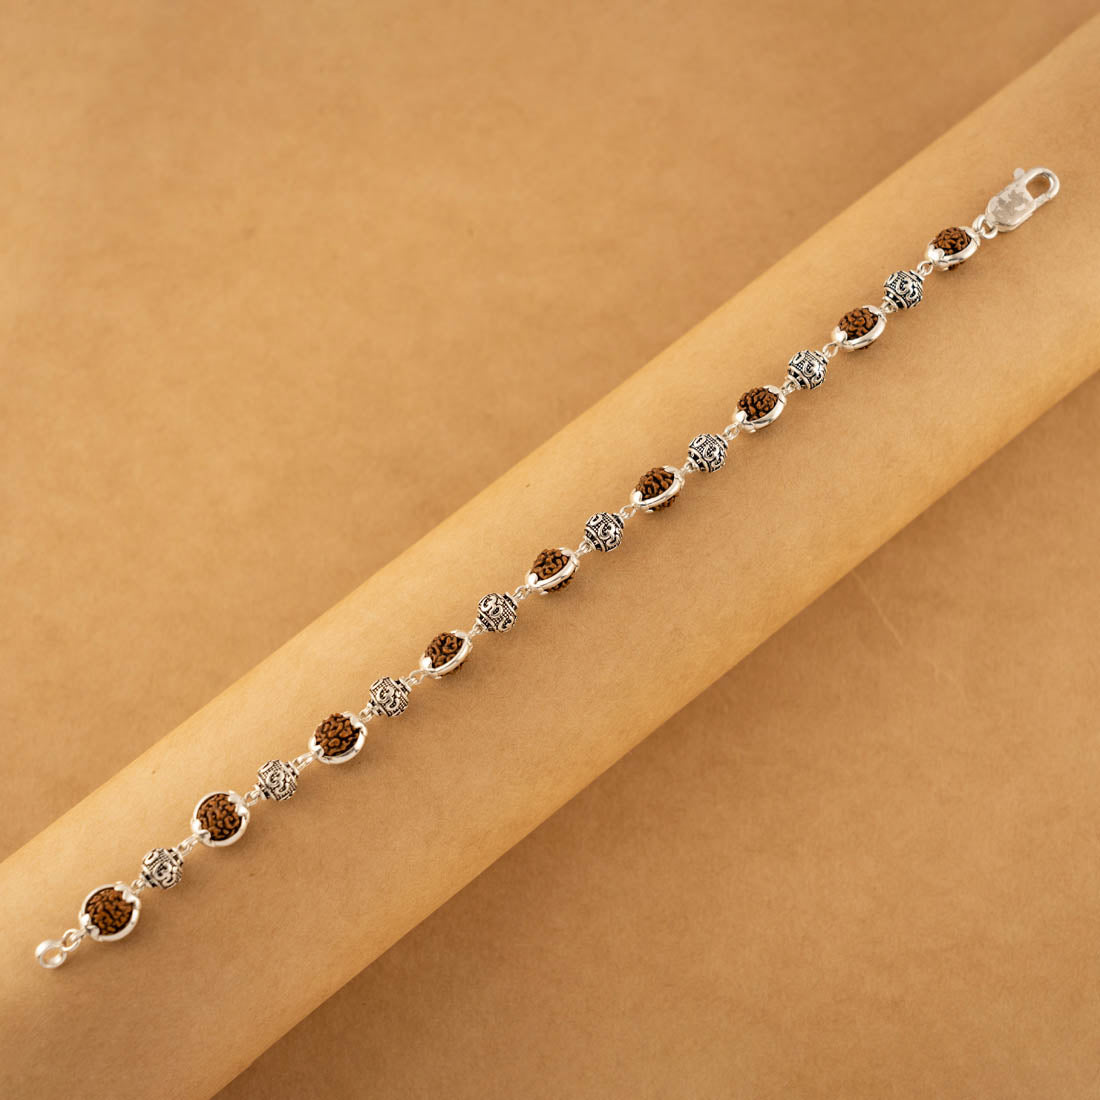 Rudraksha Silver Om Beads Capping Bracelet